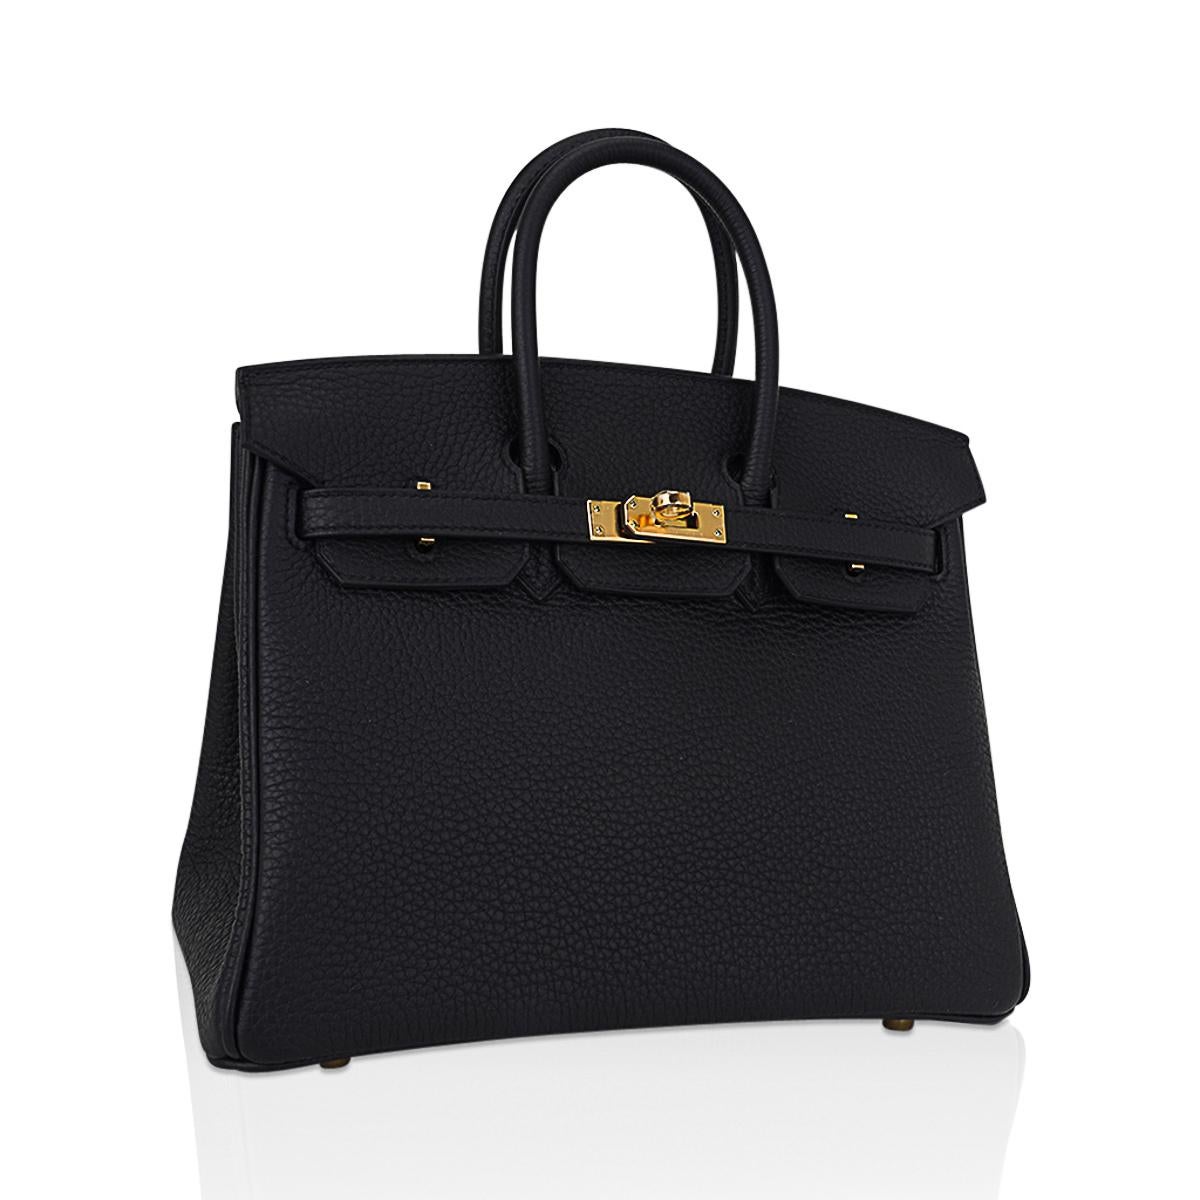 Mightychic propose un sac Hermès Birkin 25 en cuir togo noir classique.
Riche en accessoires dorés, cette beauté est un sac chic pour le jour comme pour le soir.
Le cuir Togo luxueux est souple et résistant aux rayures.
Livré avec serrure, clés,